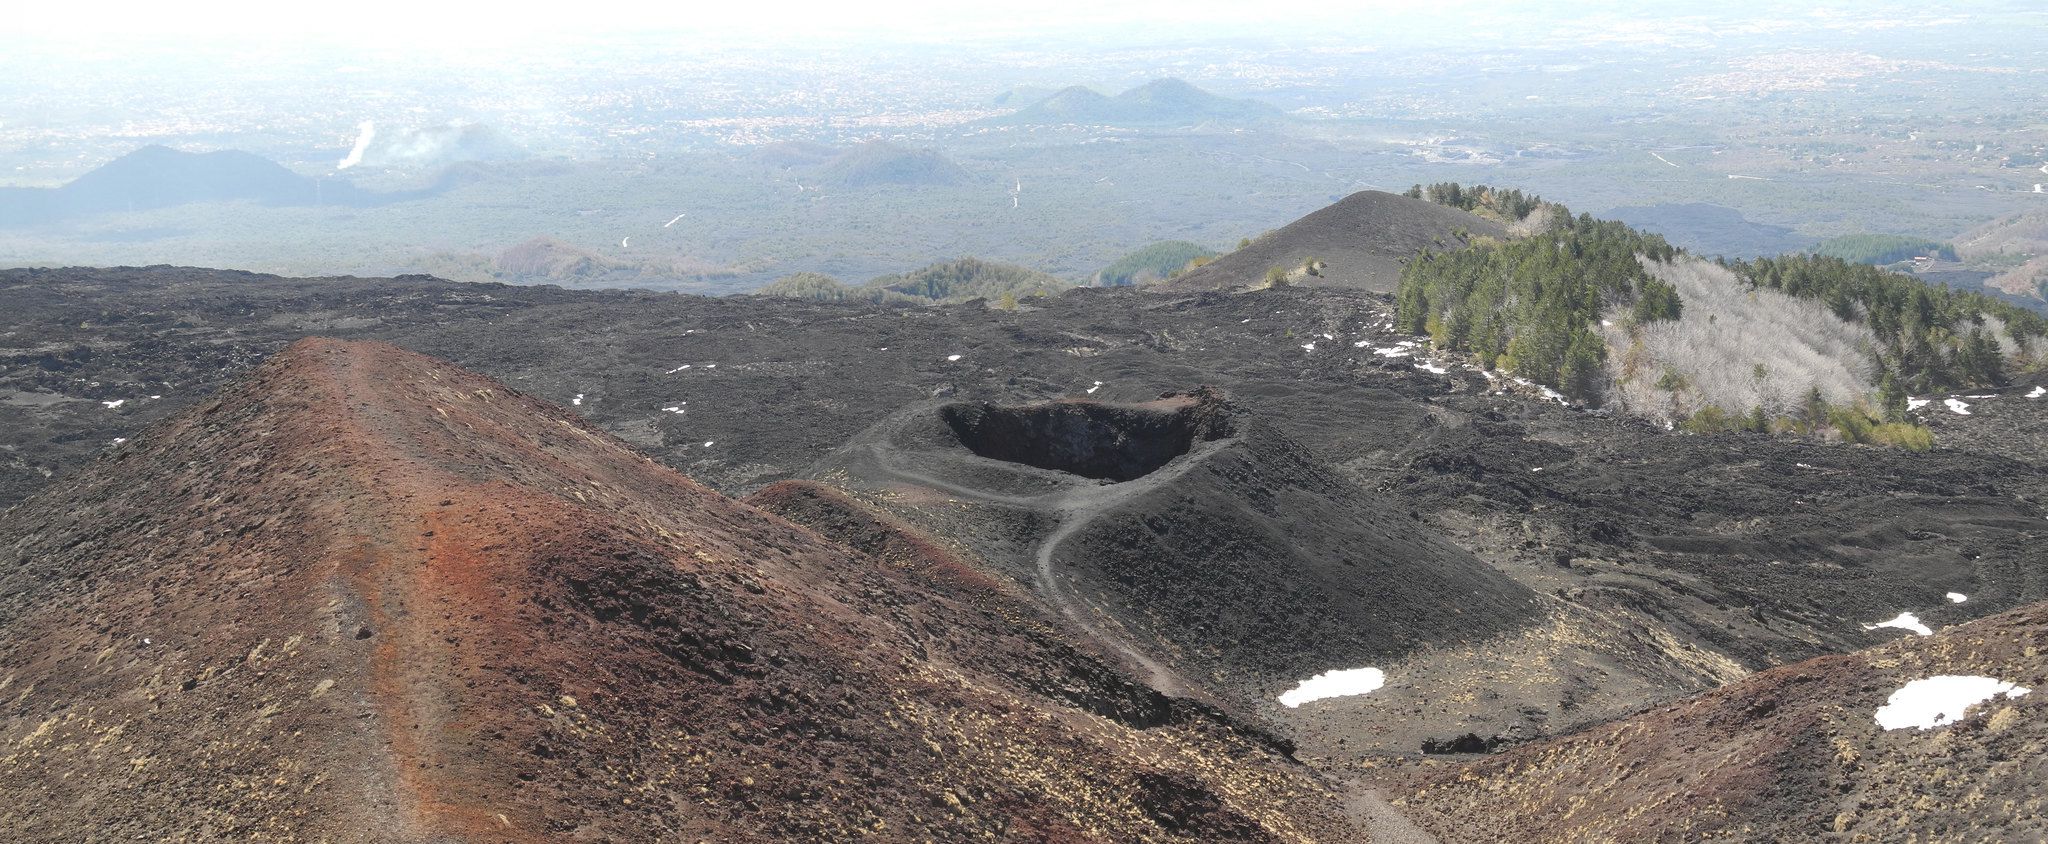 Vaulkaanlandschap van de Etna